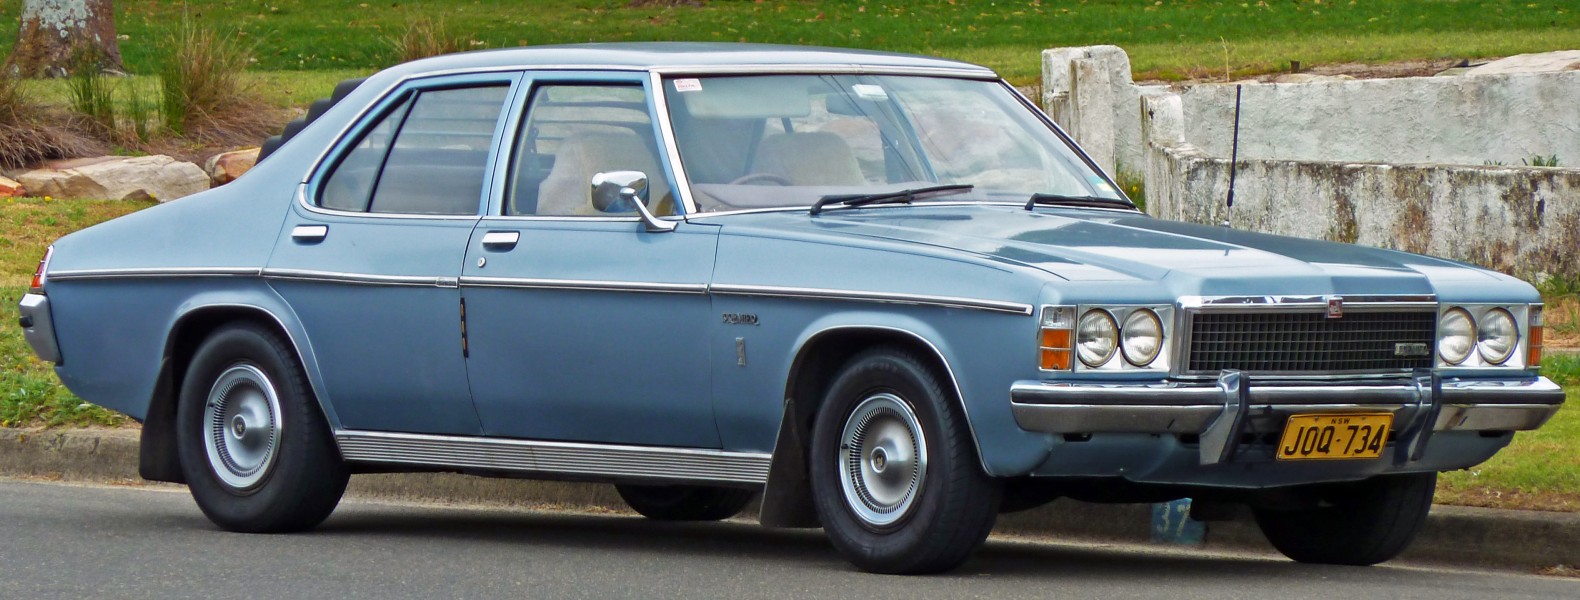 1977-1980 Holden HZ Premier sedan 01